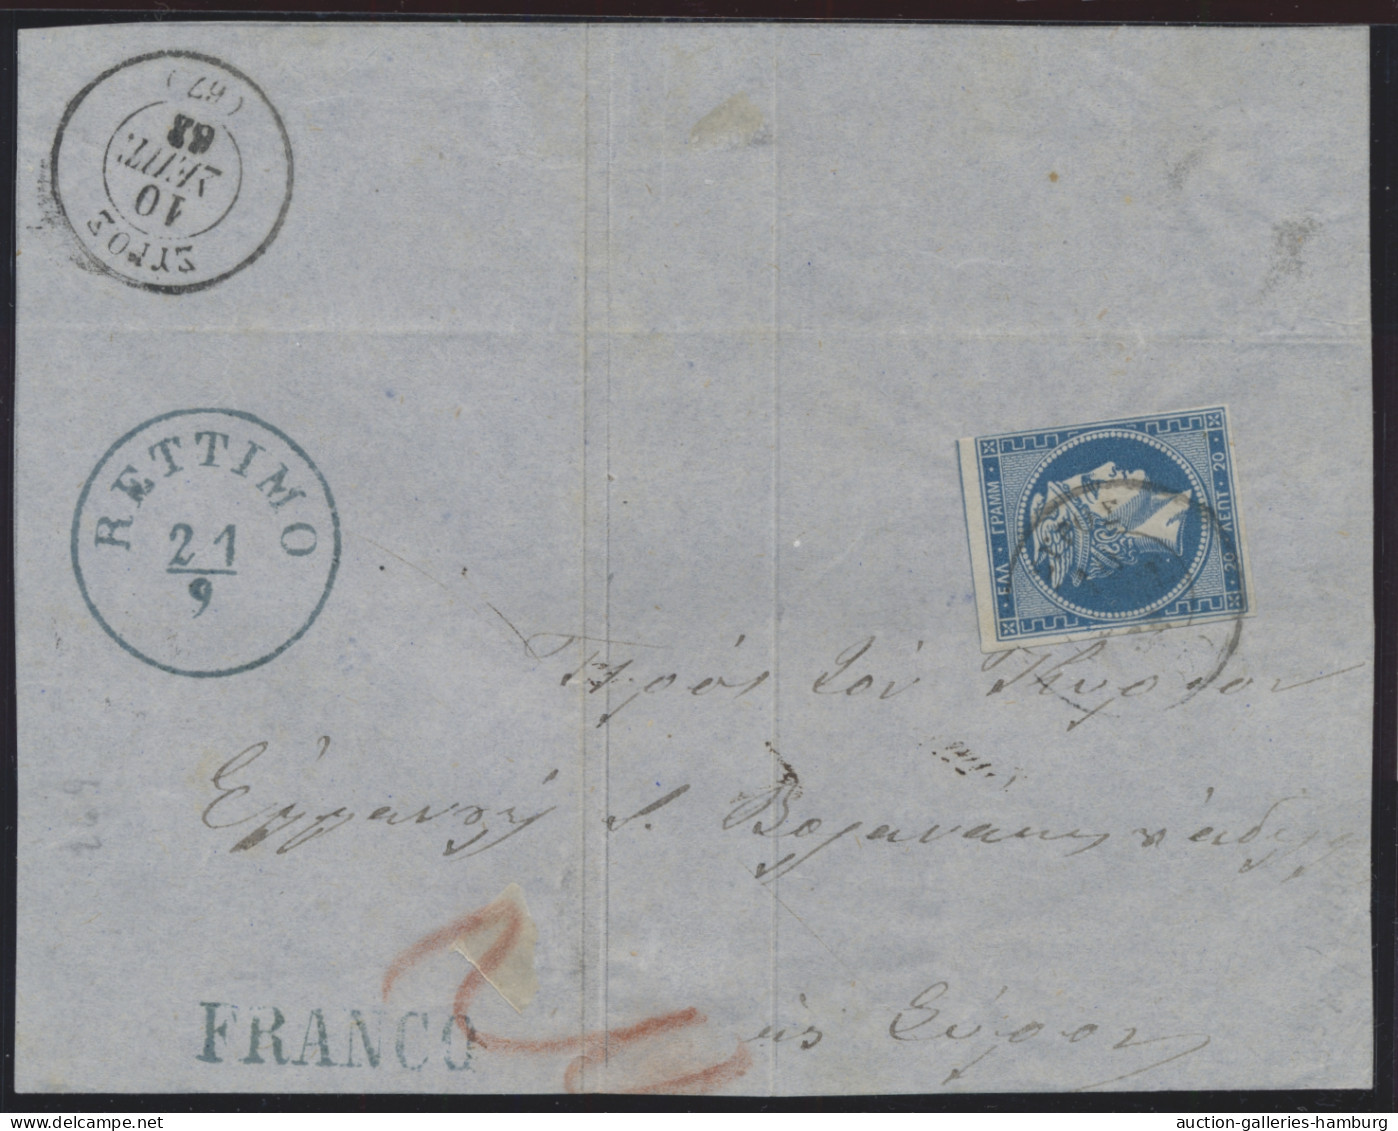 Österreichische Post auf Kreta: 1849-1914, bessere Spezialsammlung der Post auf